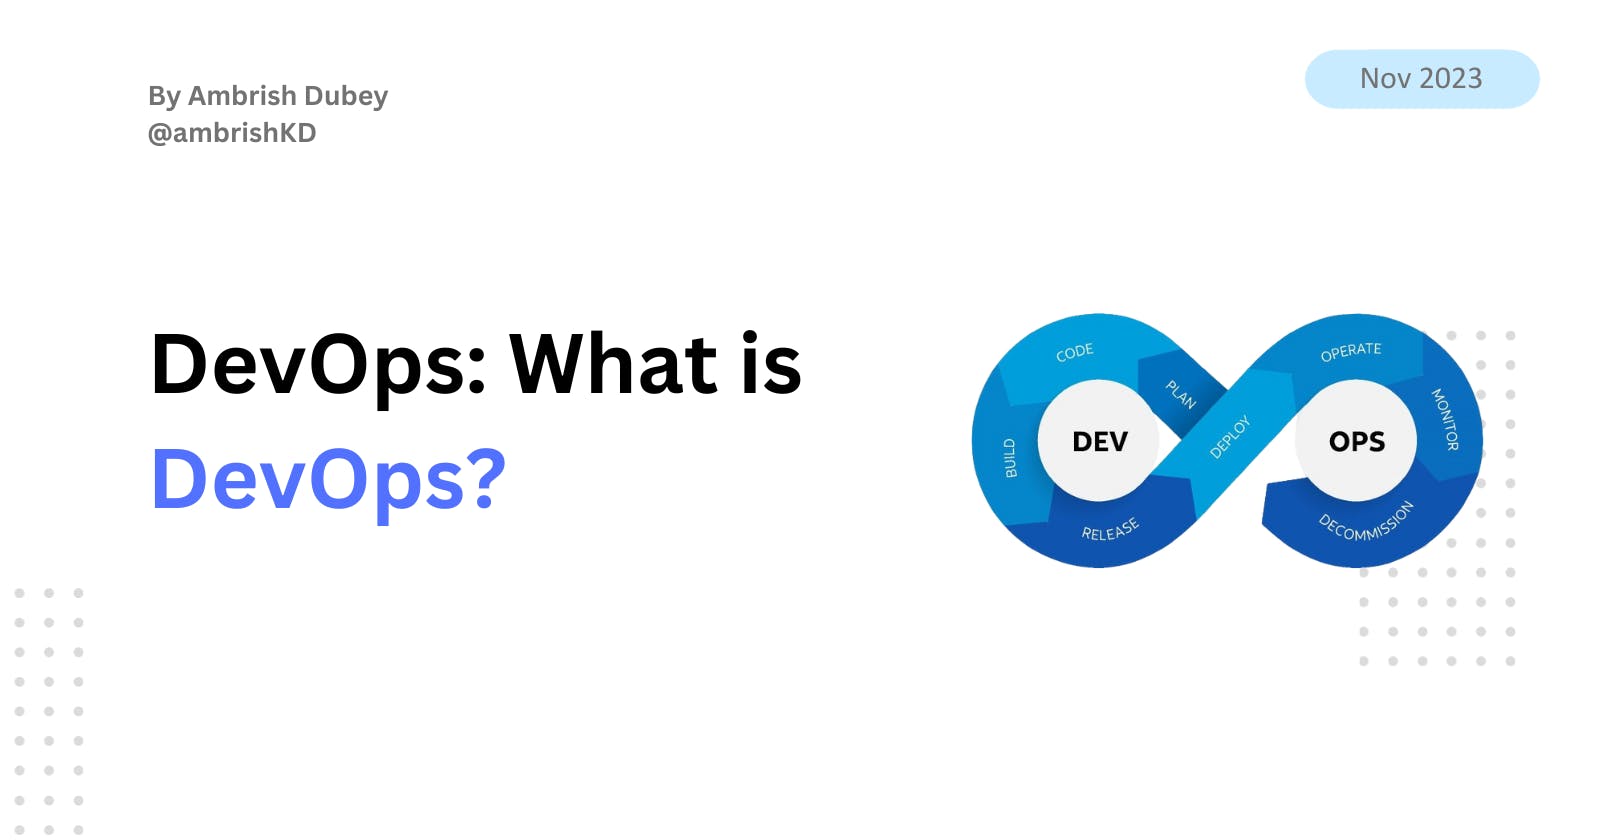 DevOps: What is DevOps?